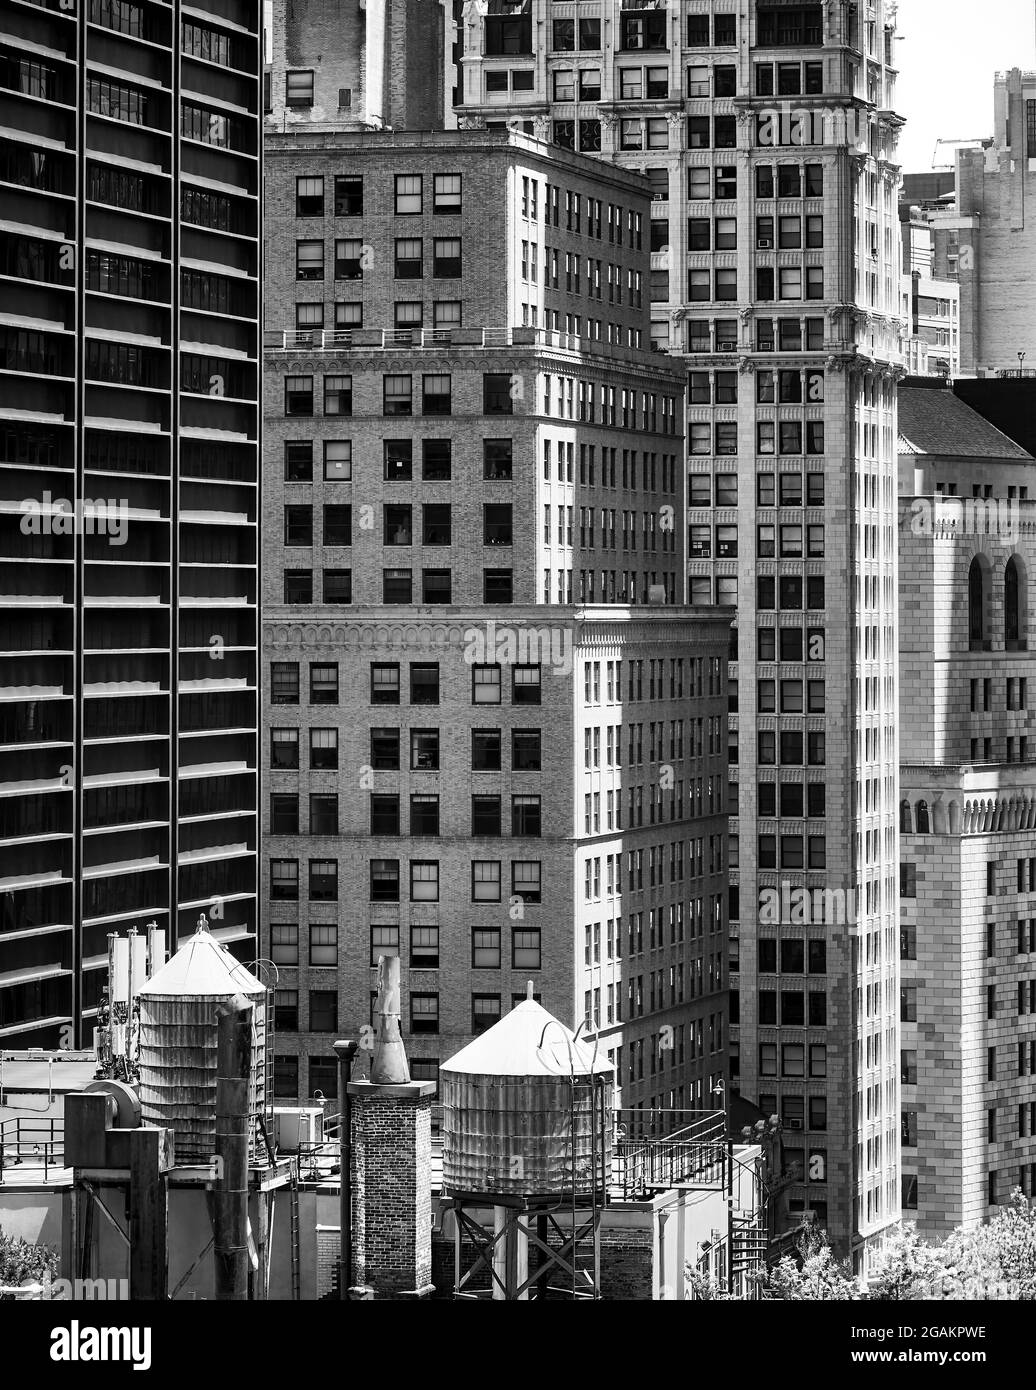 Manhattan architettura variegata con torri d'acqua sul tetto, New York City, USA. Foto Stock